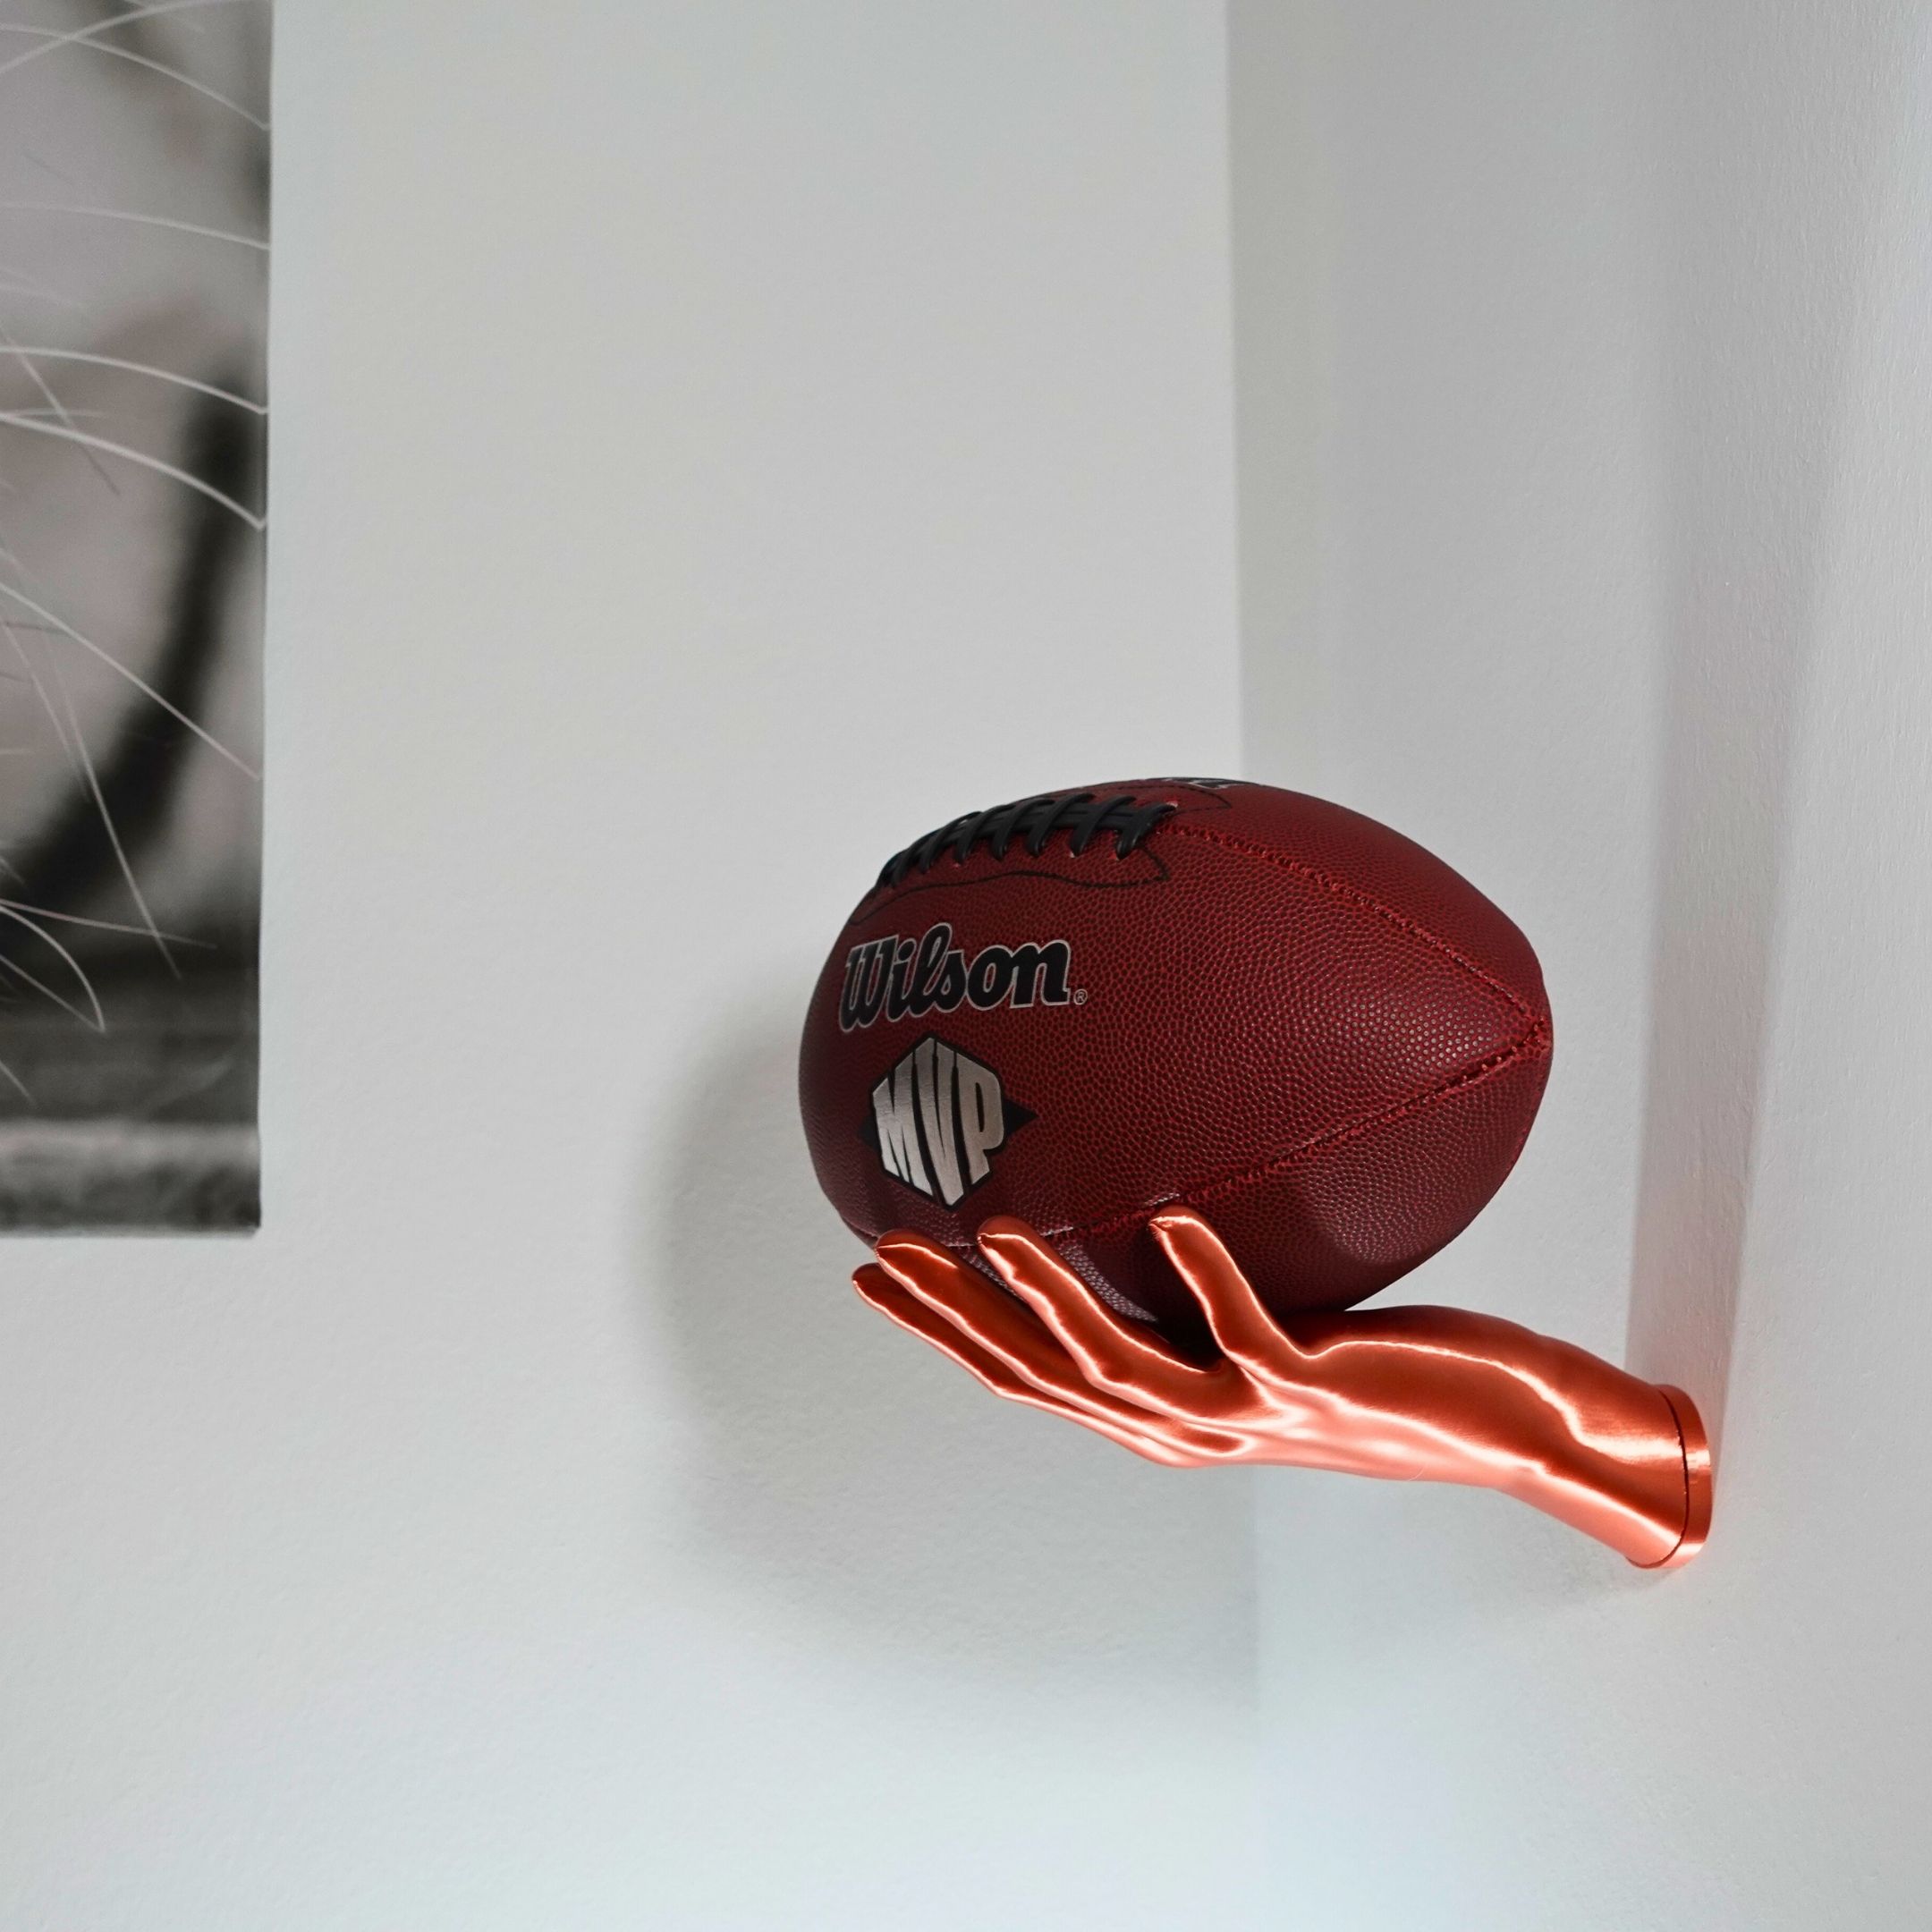 Wandhalterung für Bälle im Hand Design - passend für Basketball Fußball  Bälle